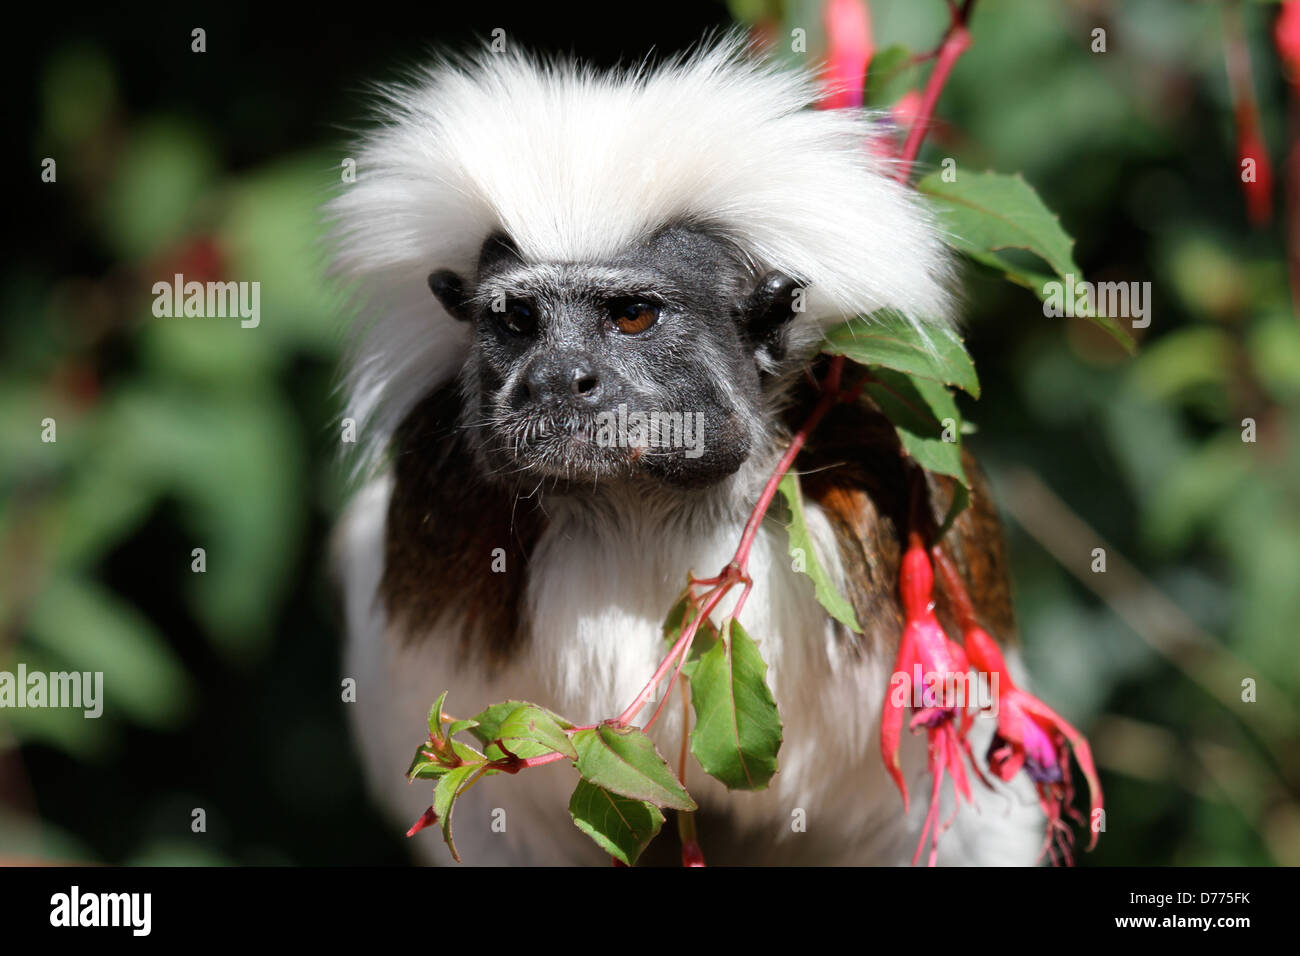 Cotton Topped Tamarin monkey Stock Photo